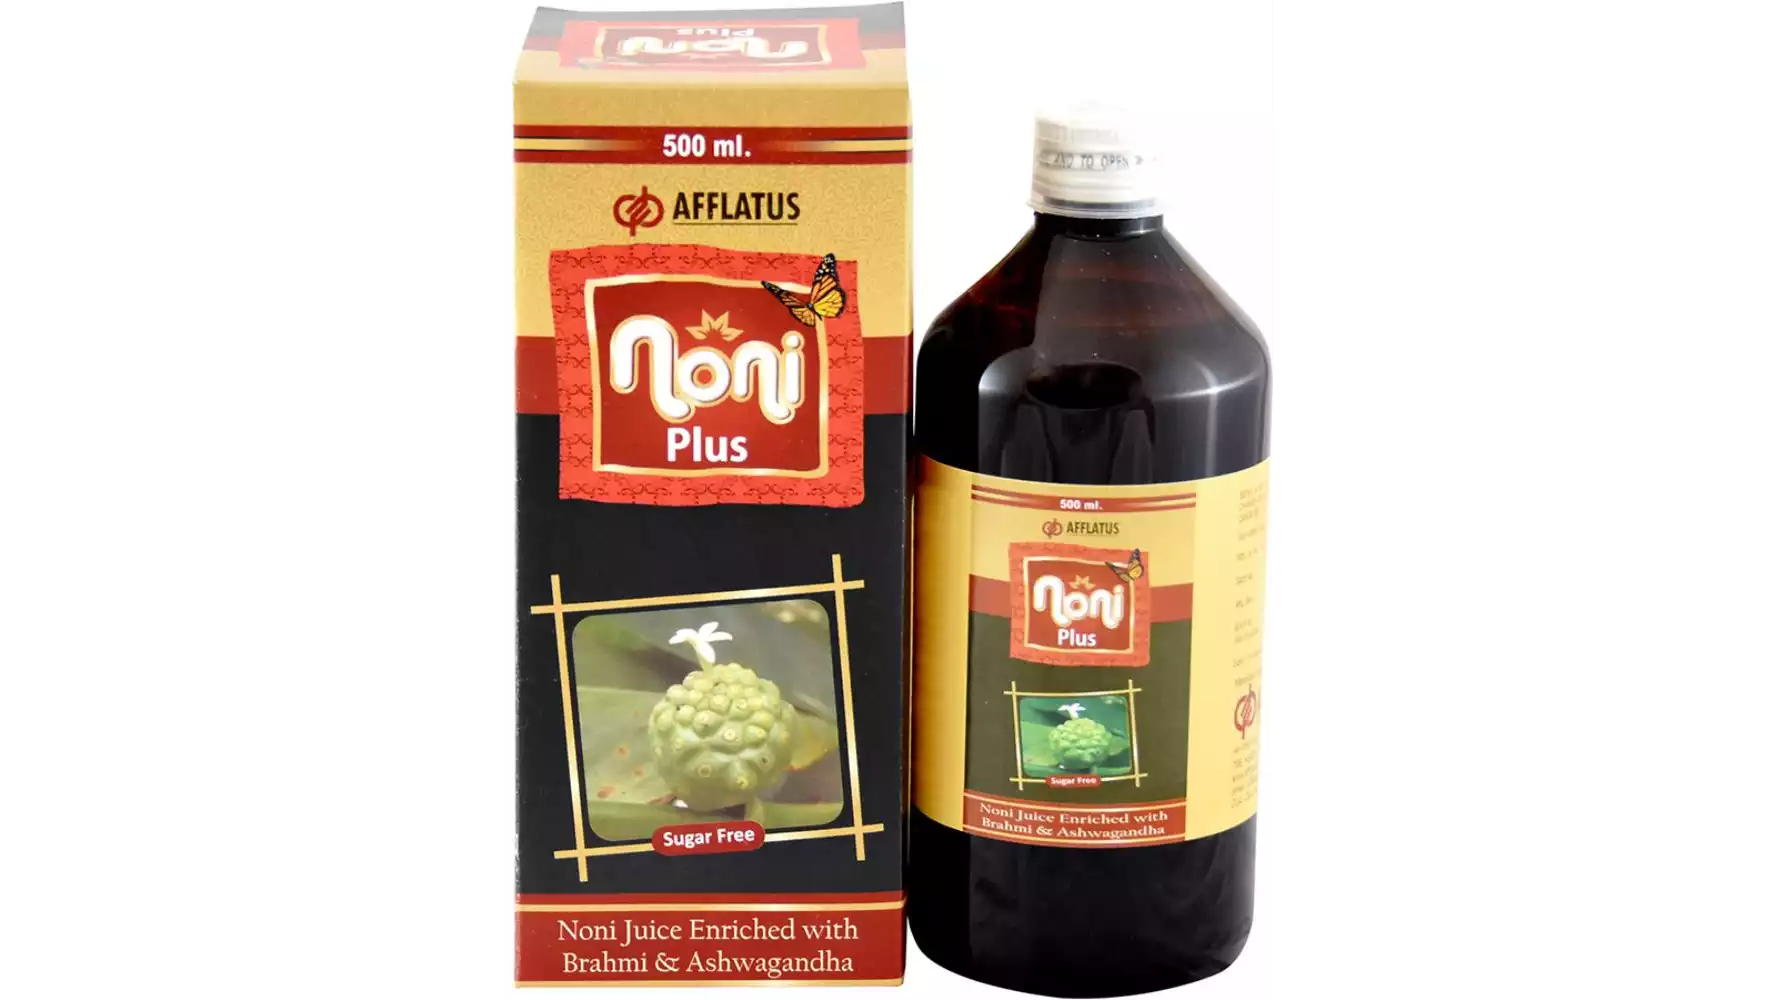 Afflatus Noni Juice (500ml)